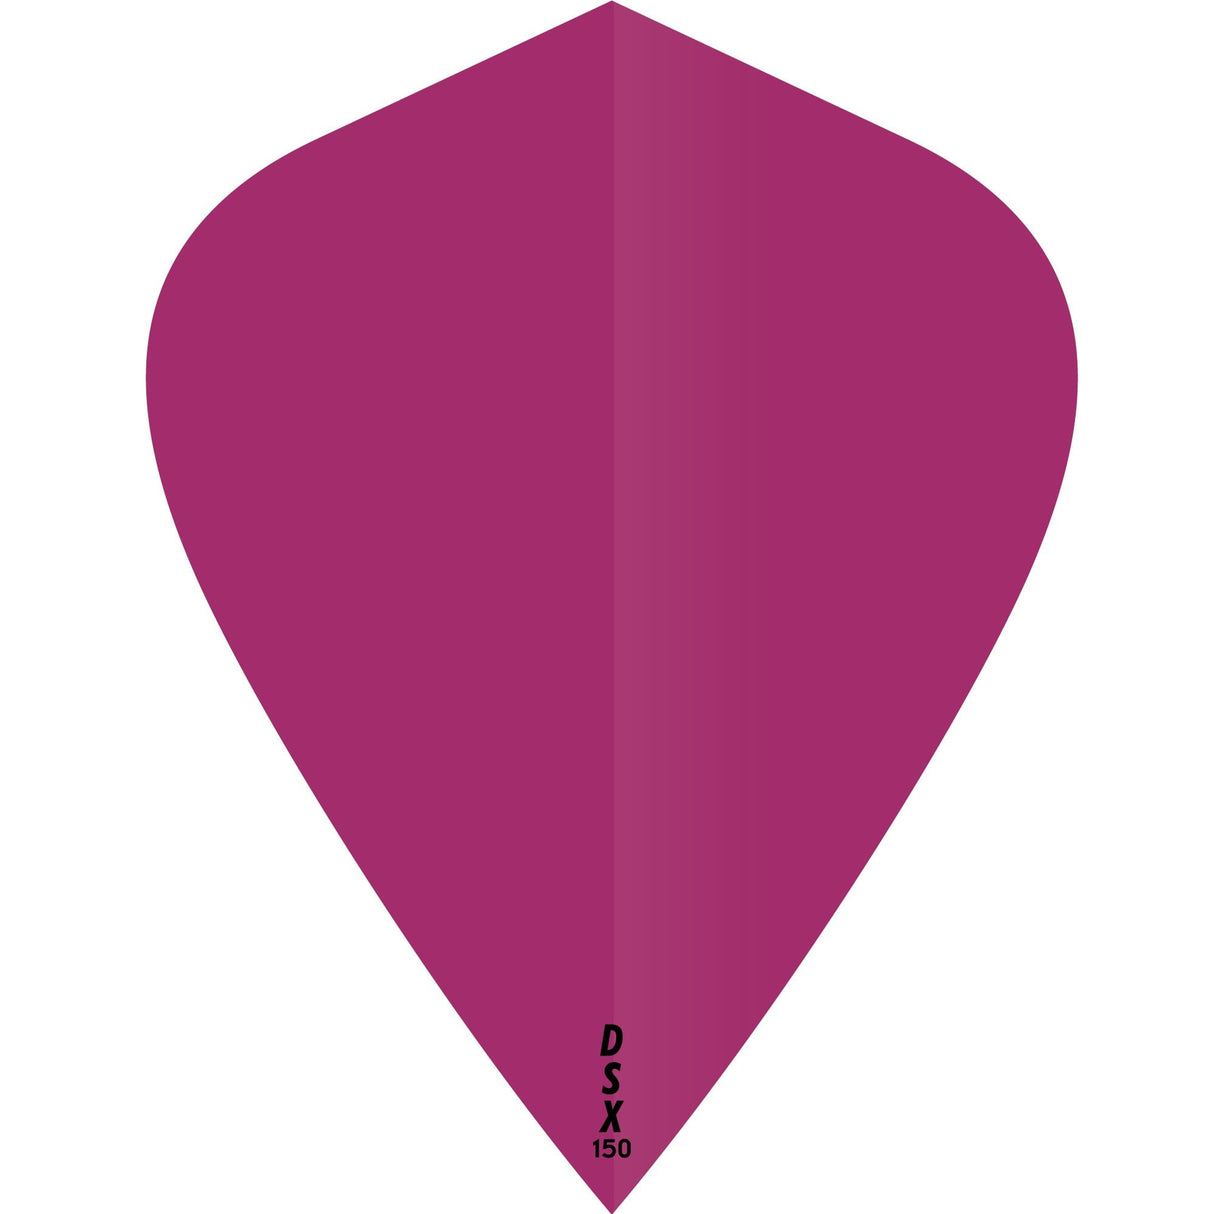 Designa DSX150 Dart Flights - Kite Pink